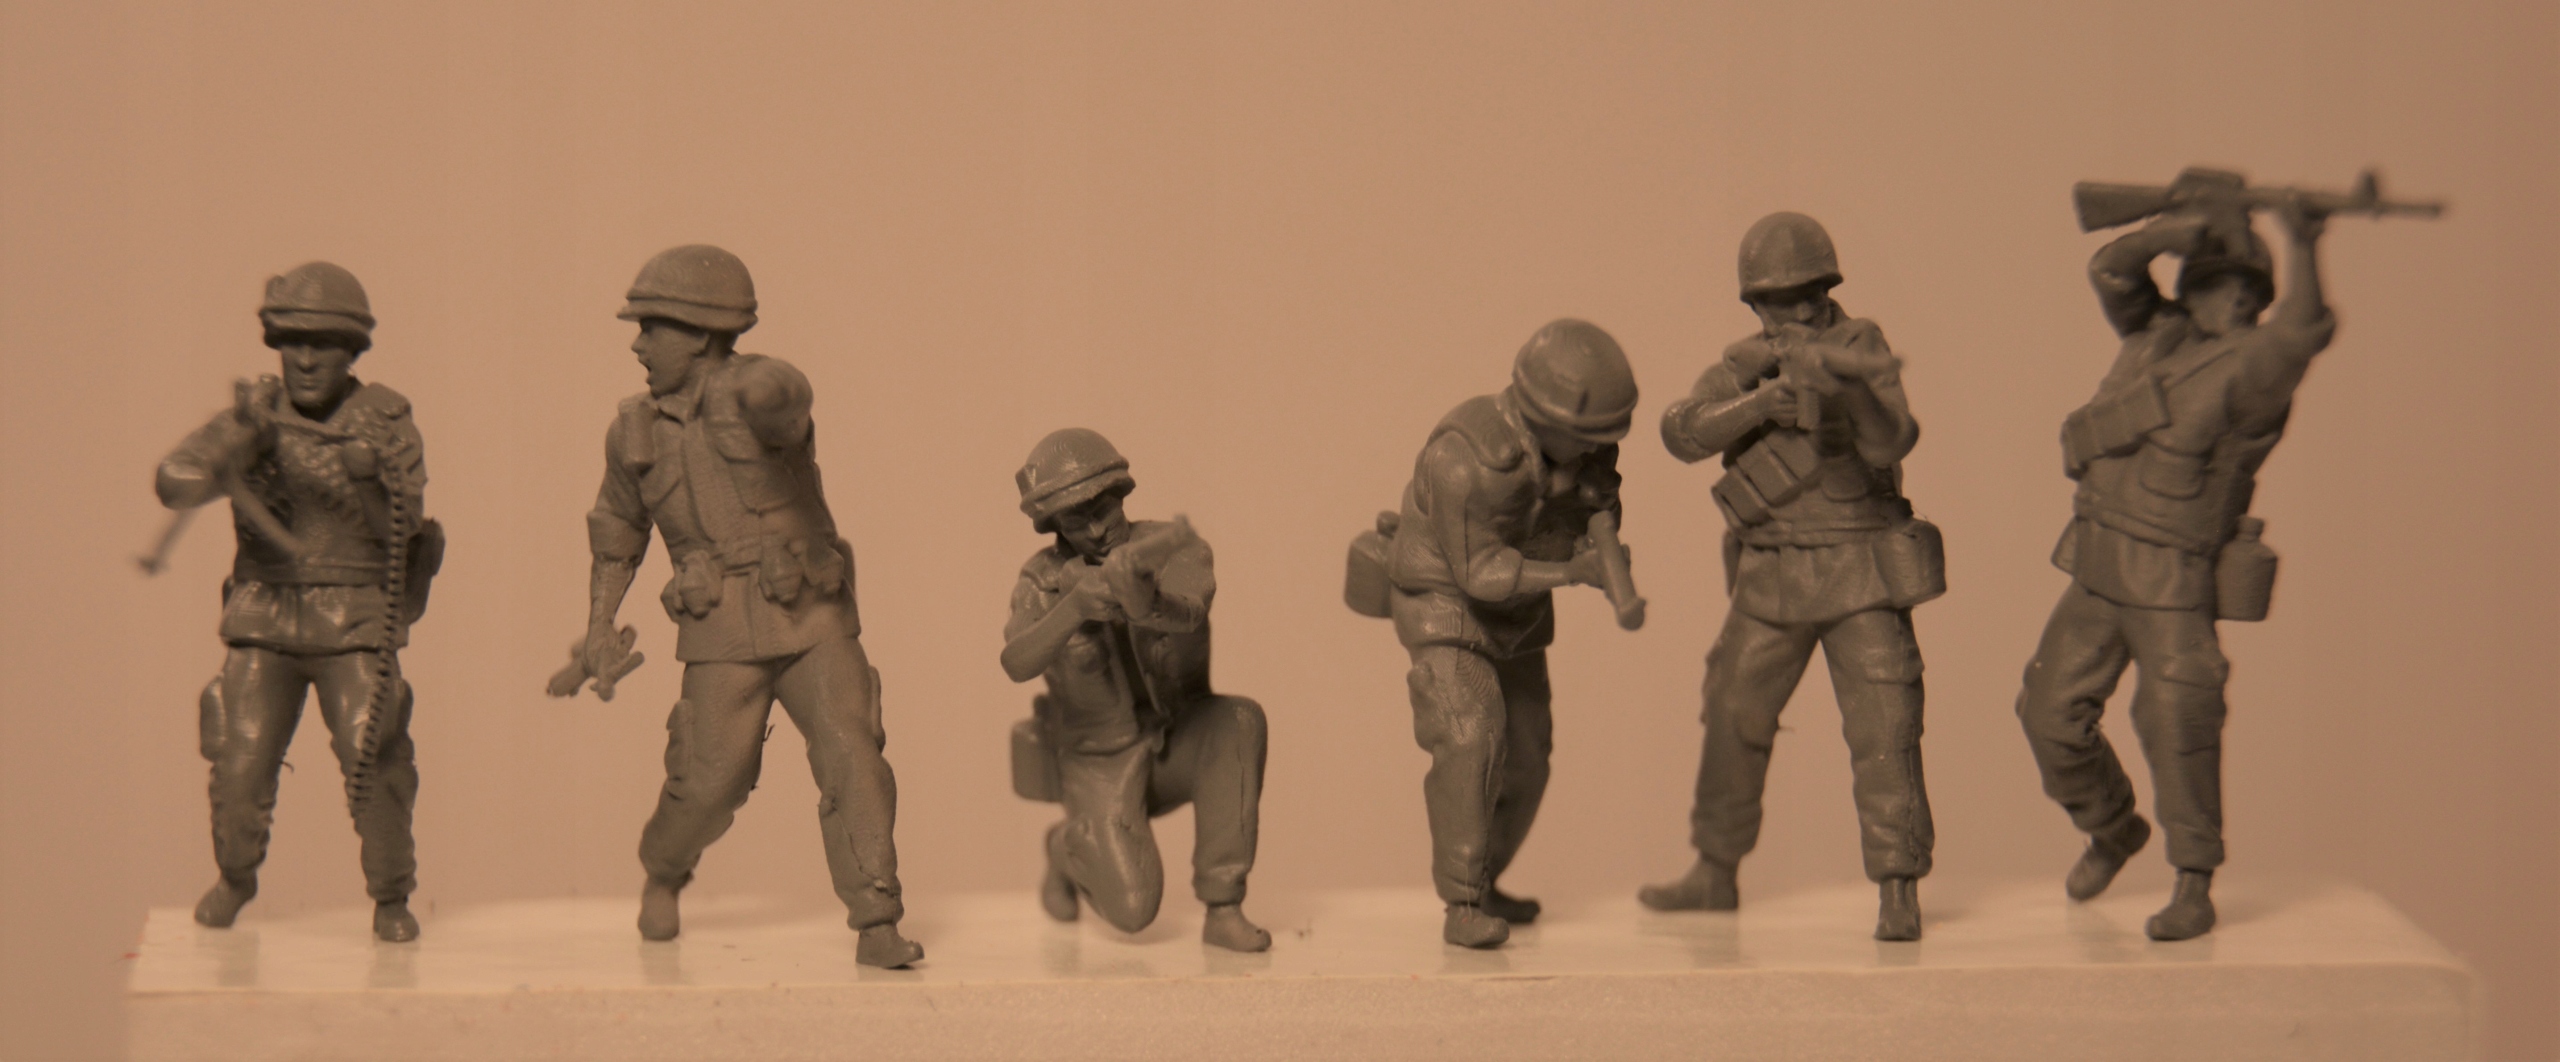 figurki amerykańskich Marines Vietnam set 4